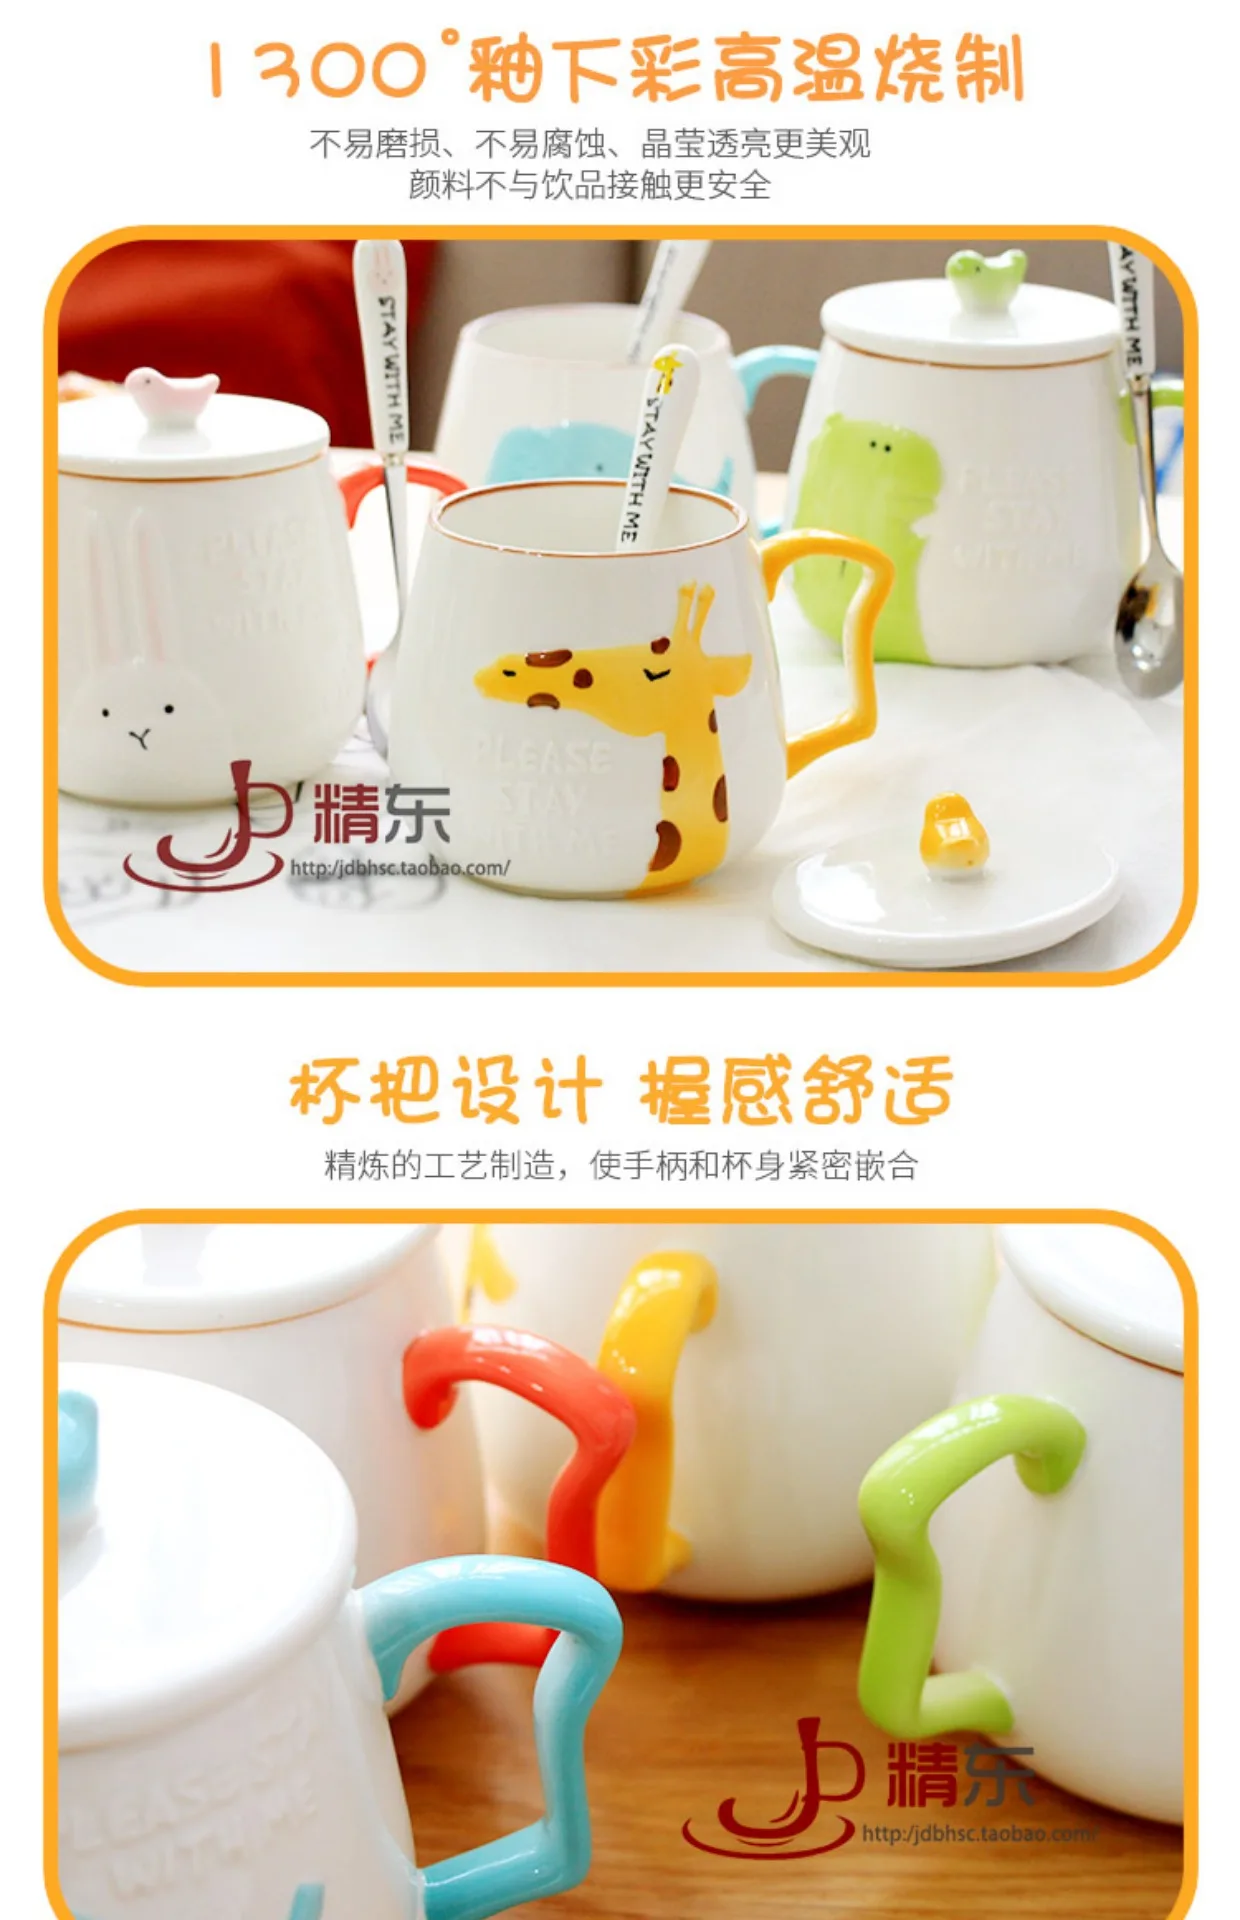 3D животное форма жирафа расписанный вручную керамический кофе кружки чашки для молока и чая милый мультяшный Слон Олень чашки подарок